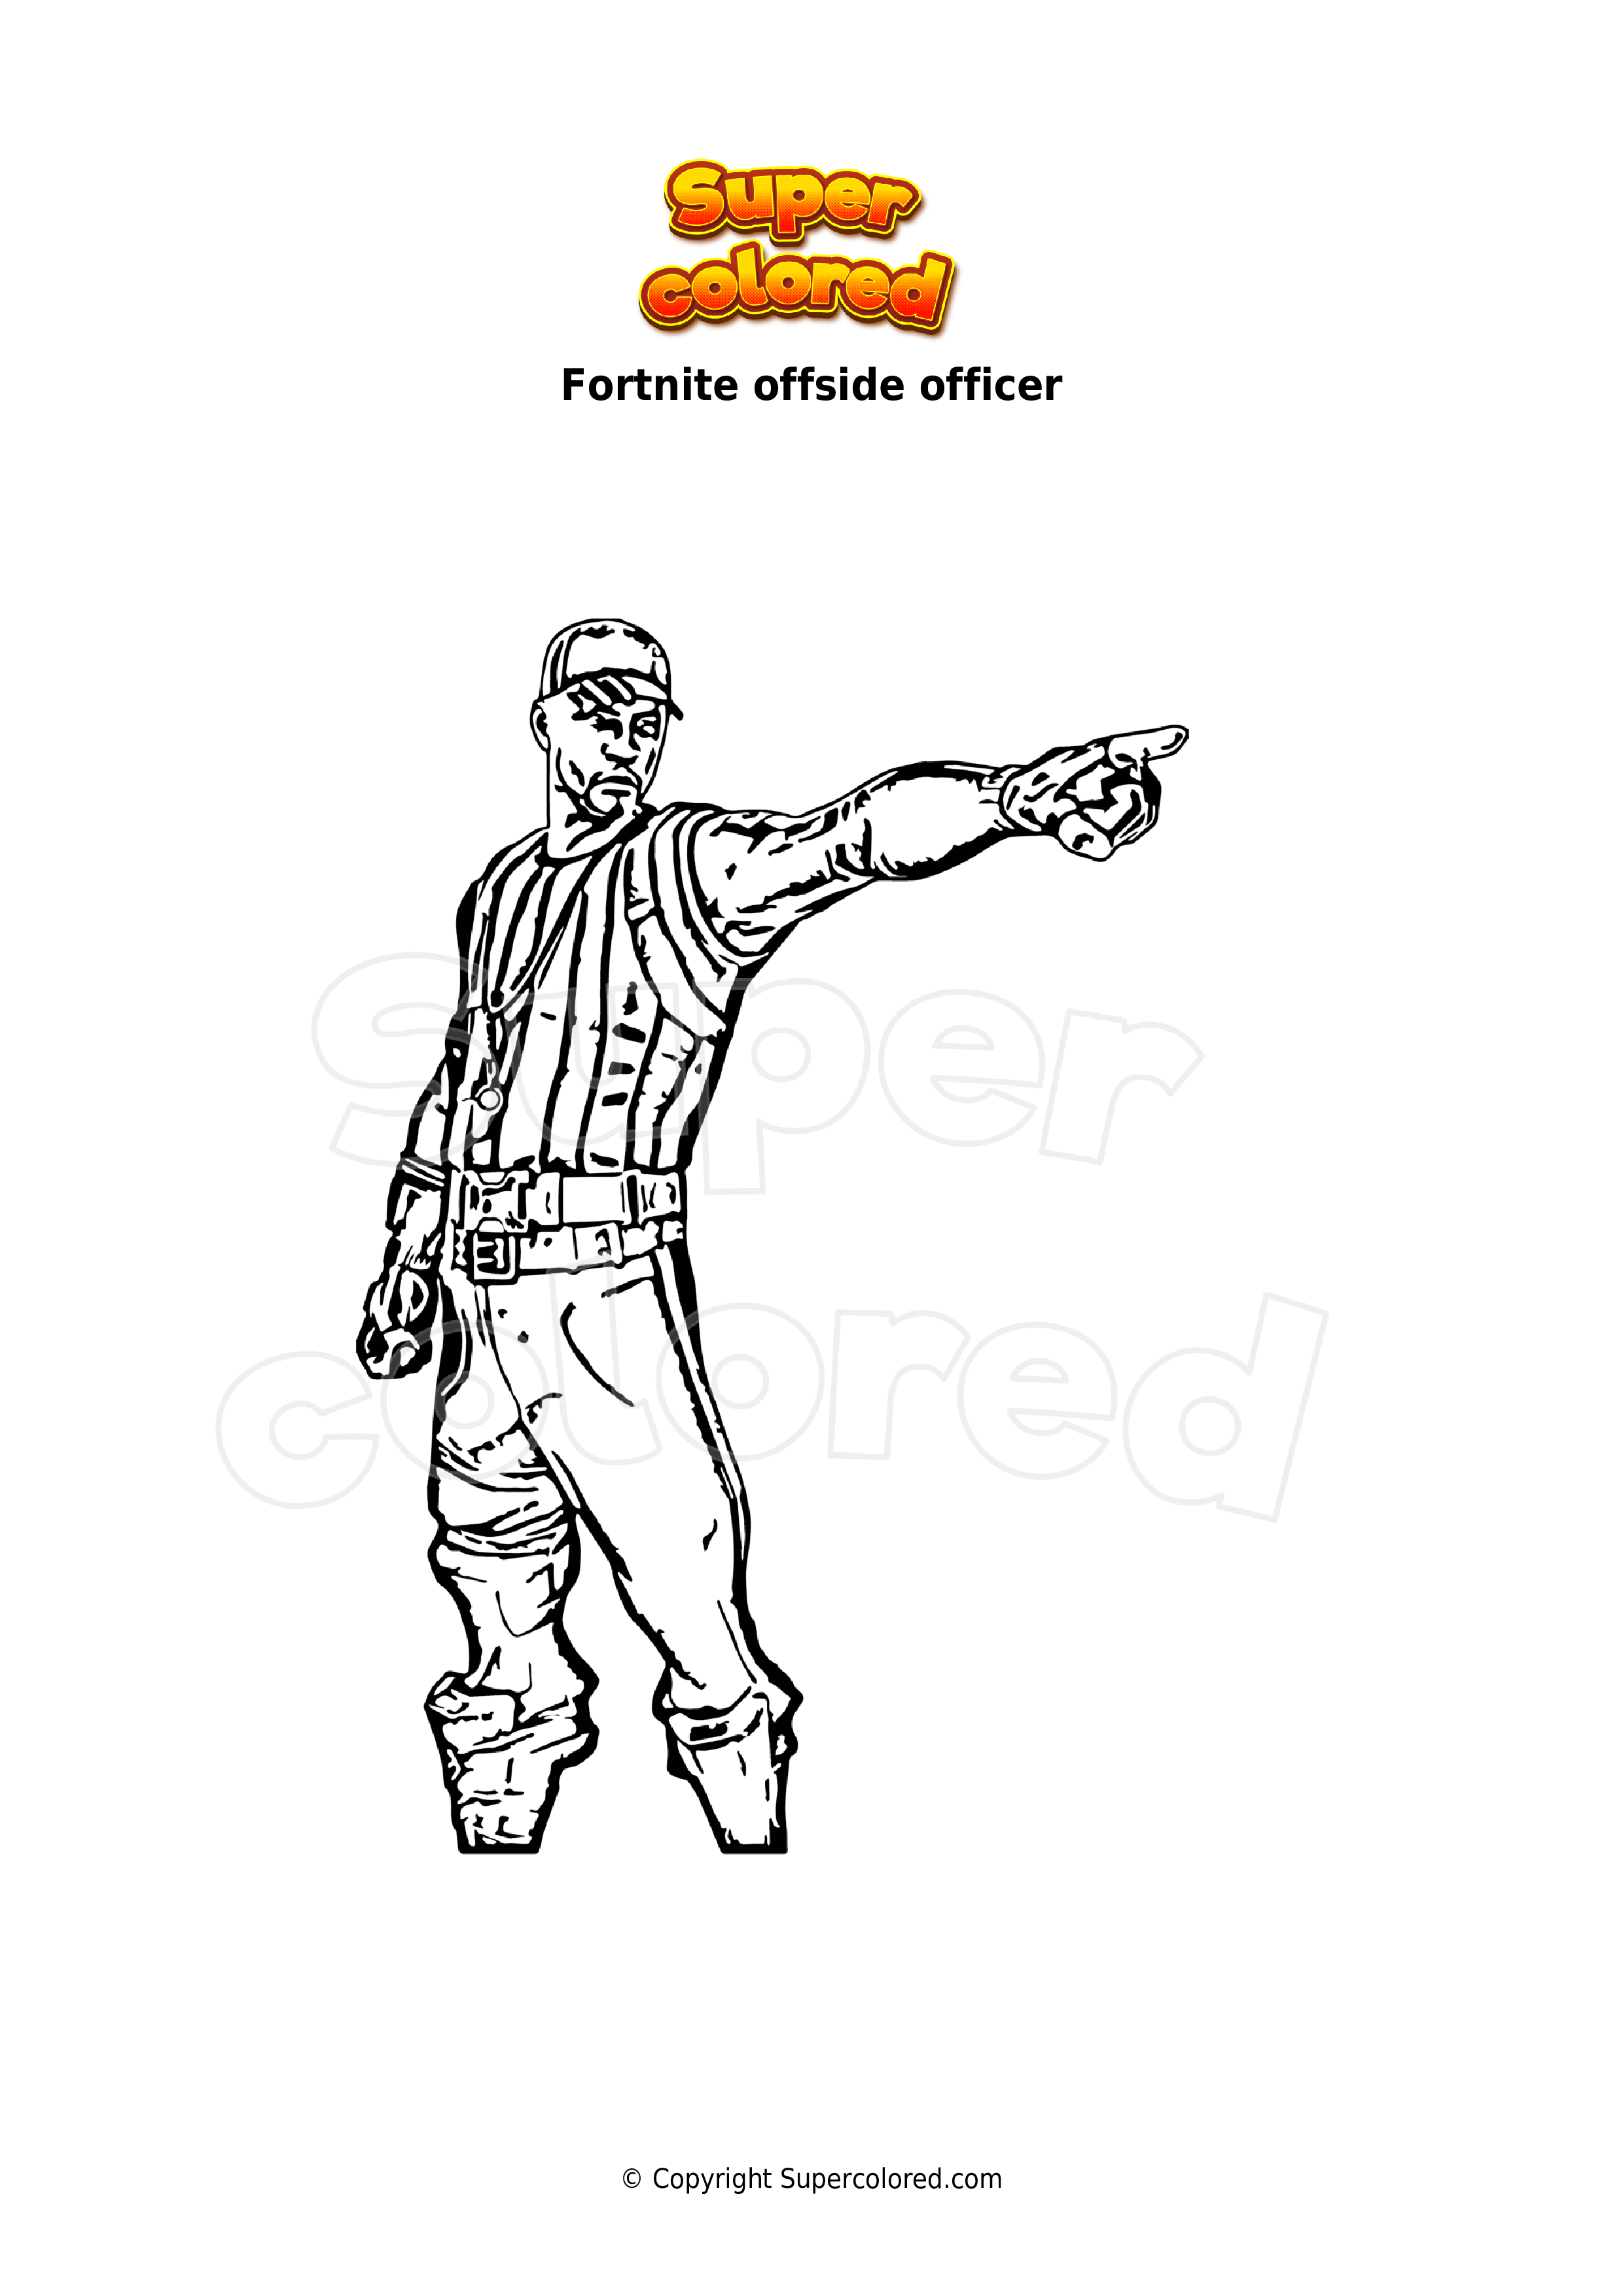 Offside Officer Fortnite Wallpapers